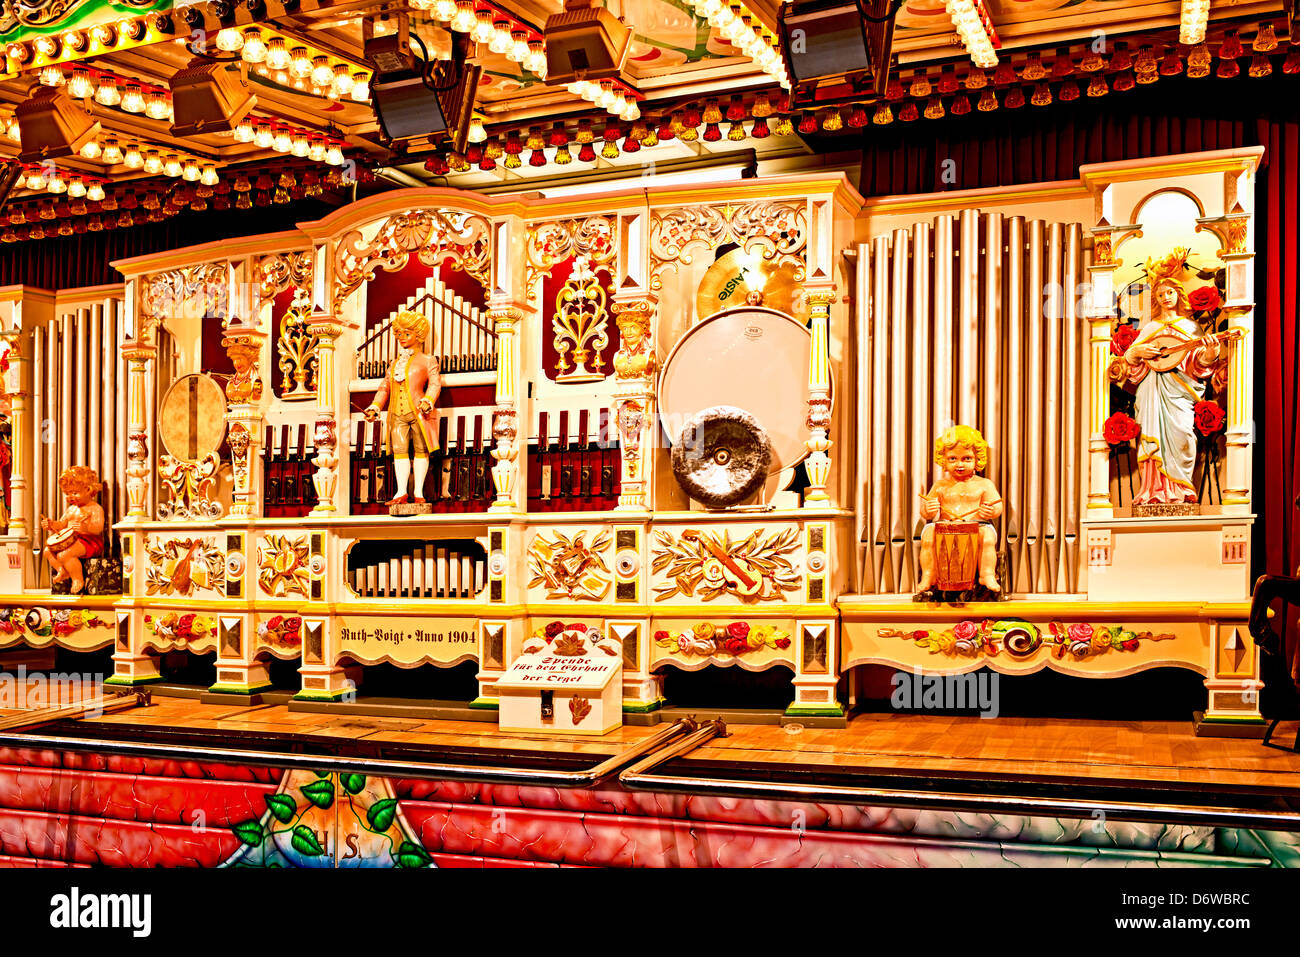 Organ at a historic fun fair in Germany Stock Photo